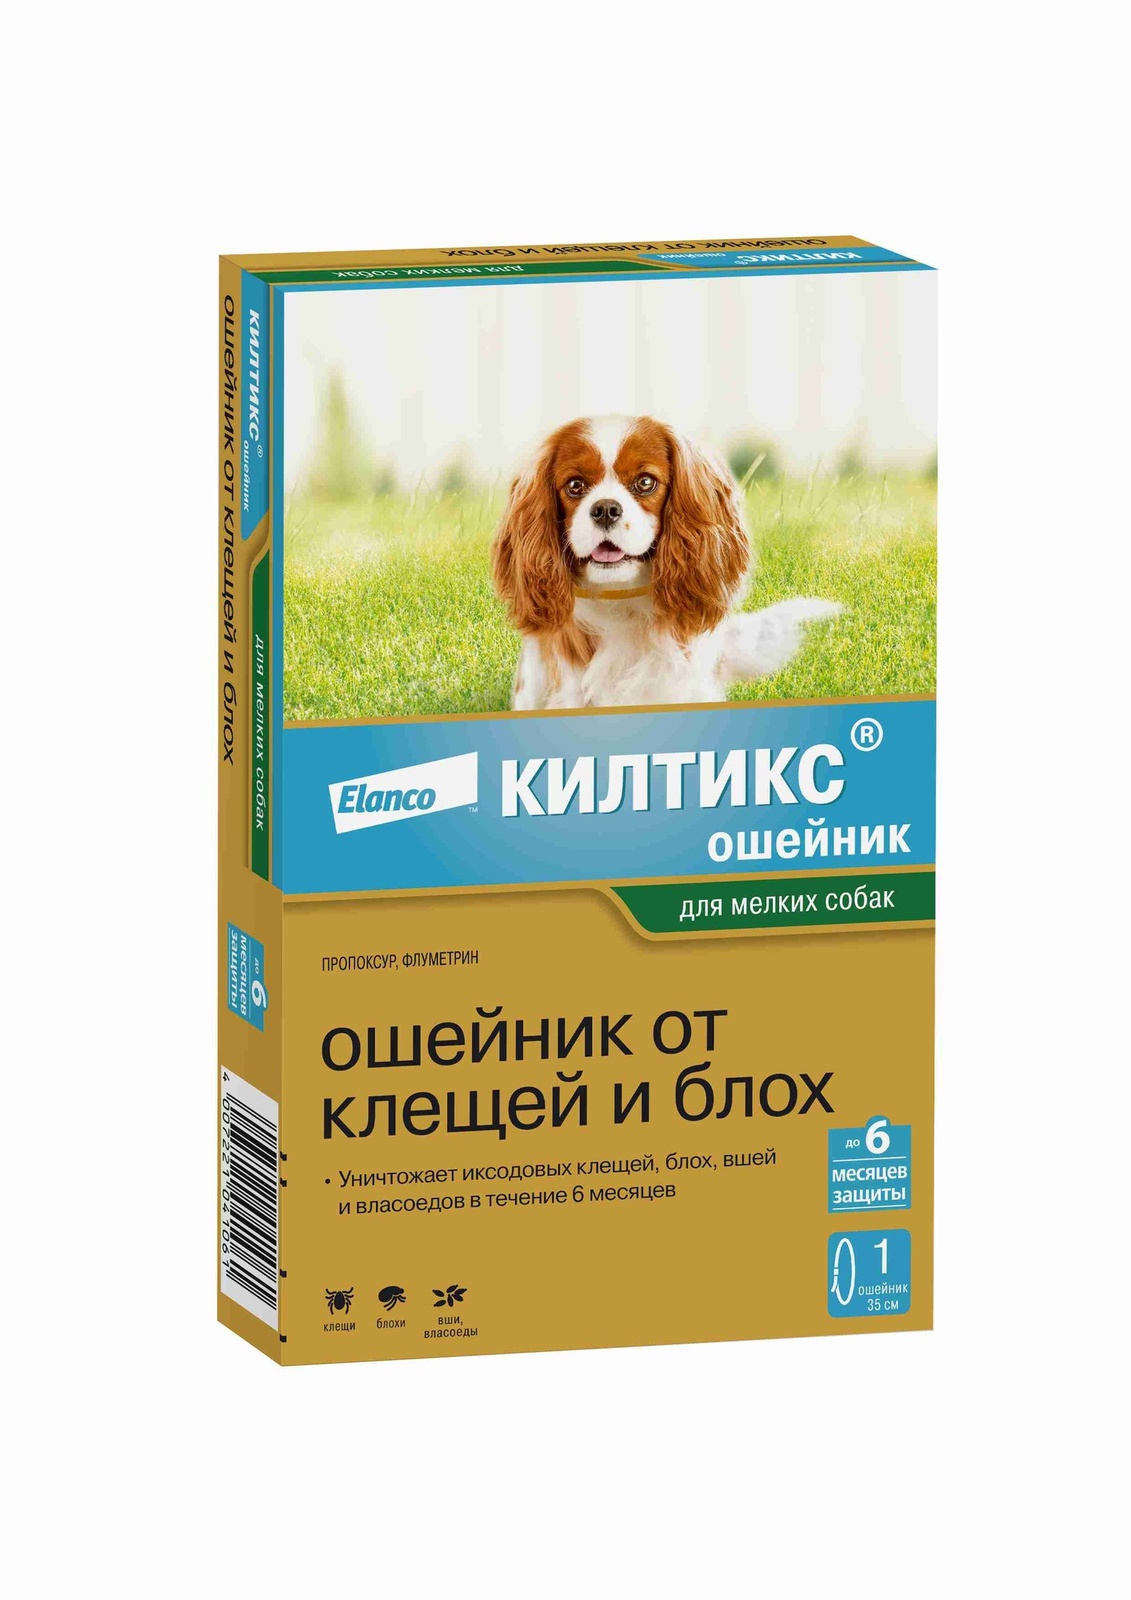 Elanco Elanco ошейник Килтикс® от клещей и блох для щенков и собак мелких пород (10 г) цена и фото